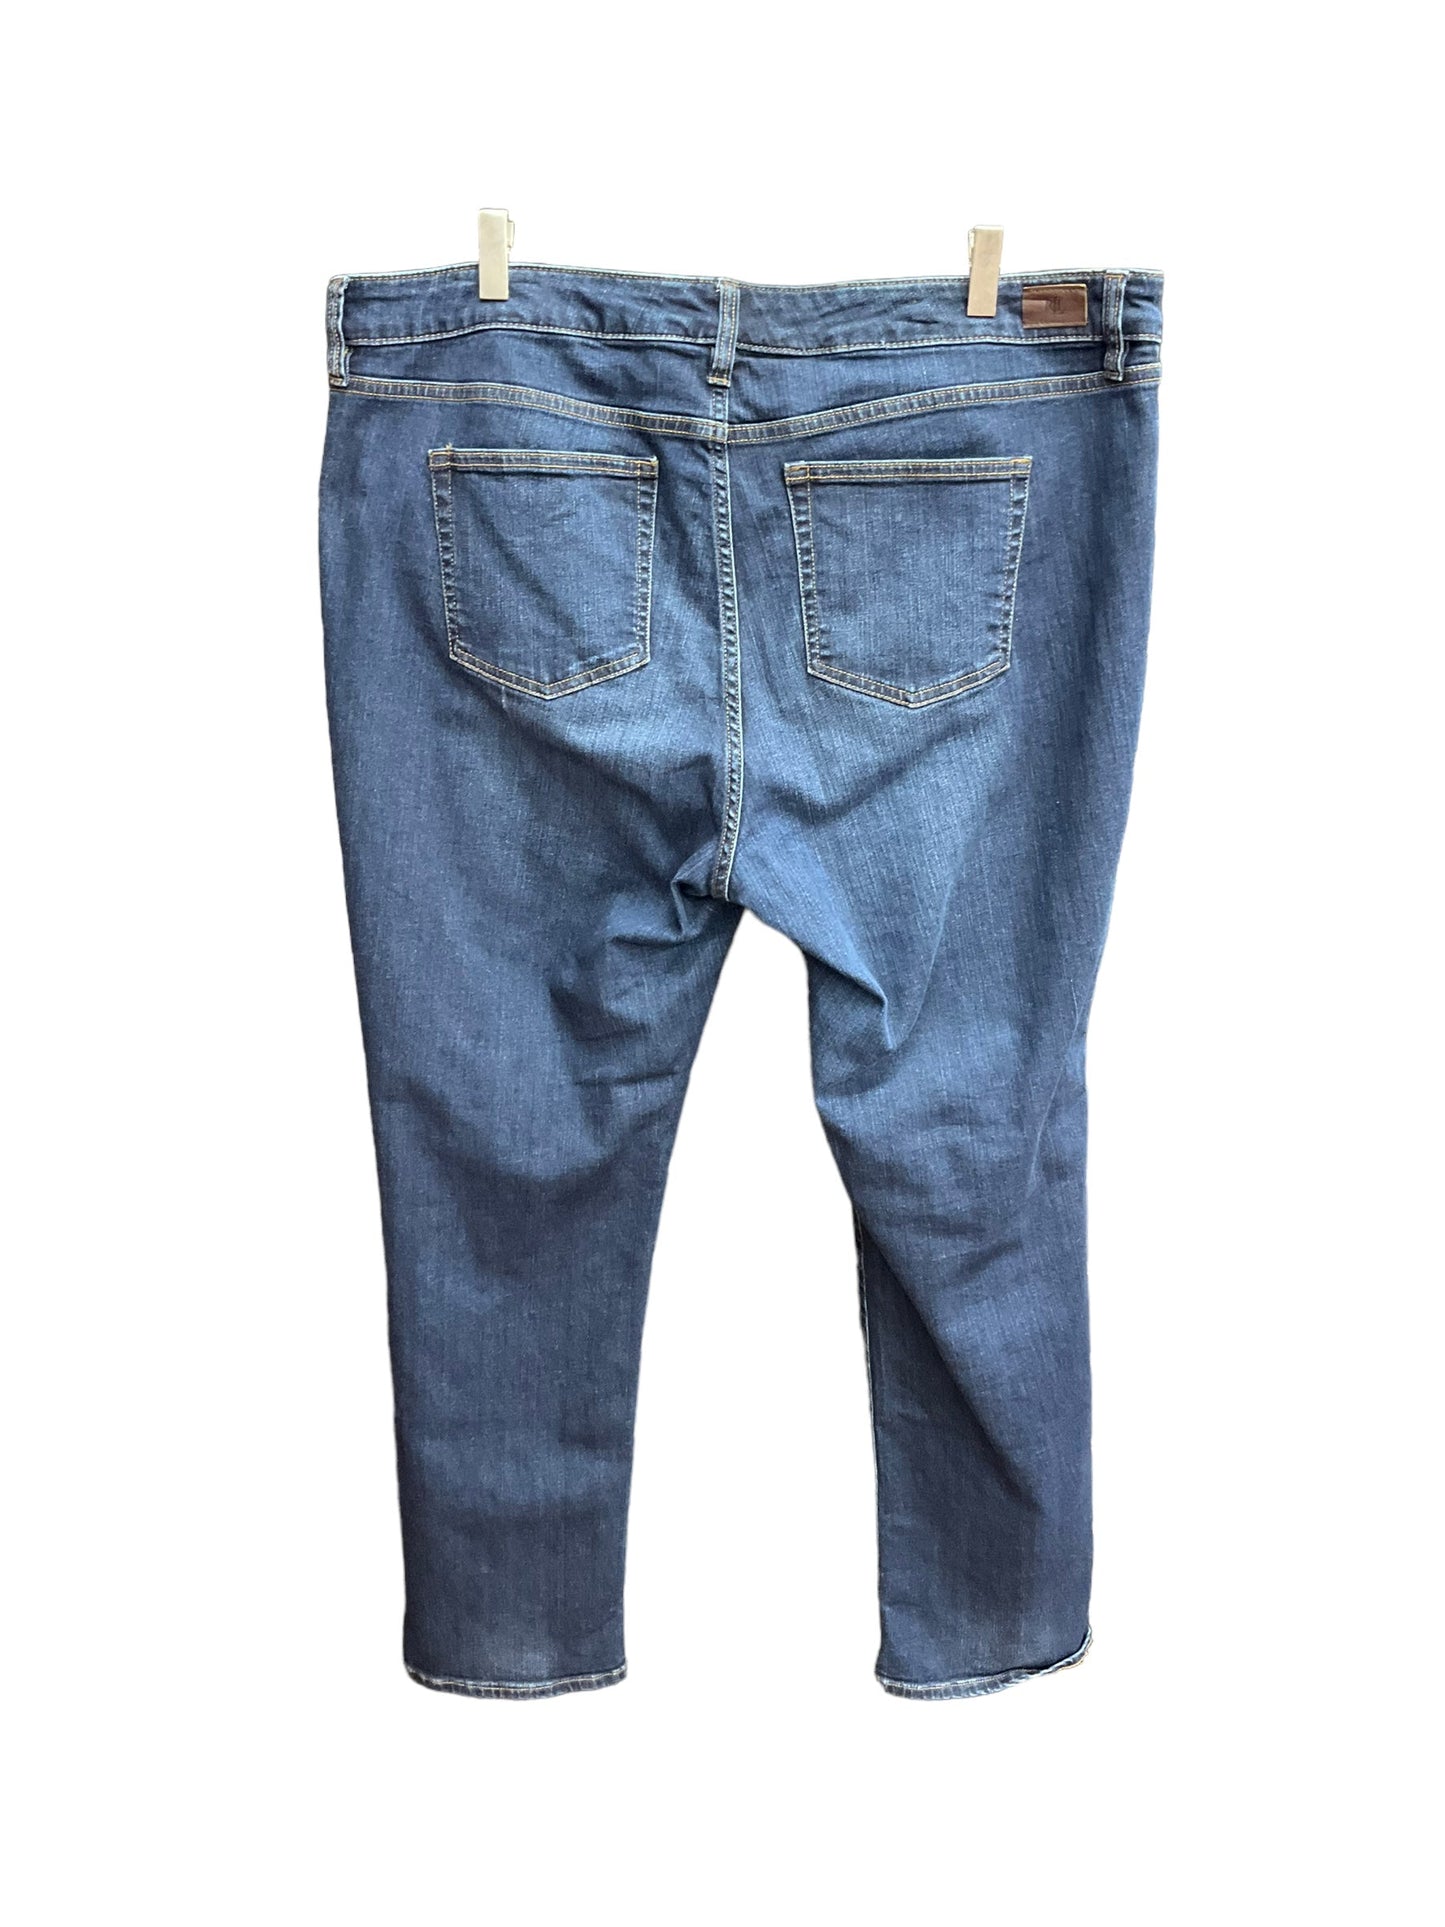 Denim Jeans Straight Ralph Lauren, Size 16